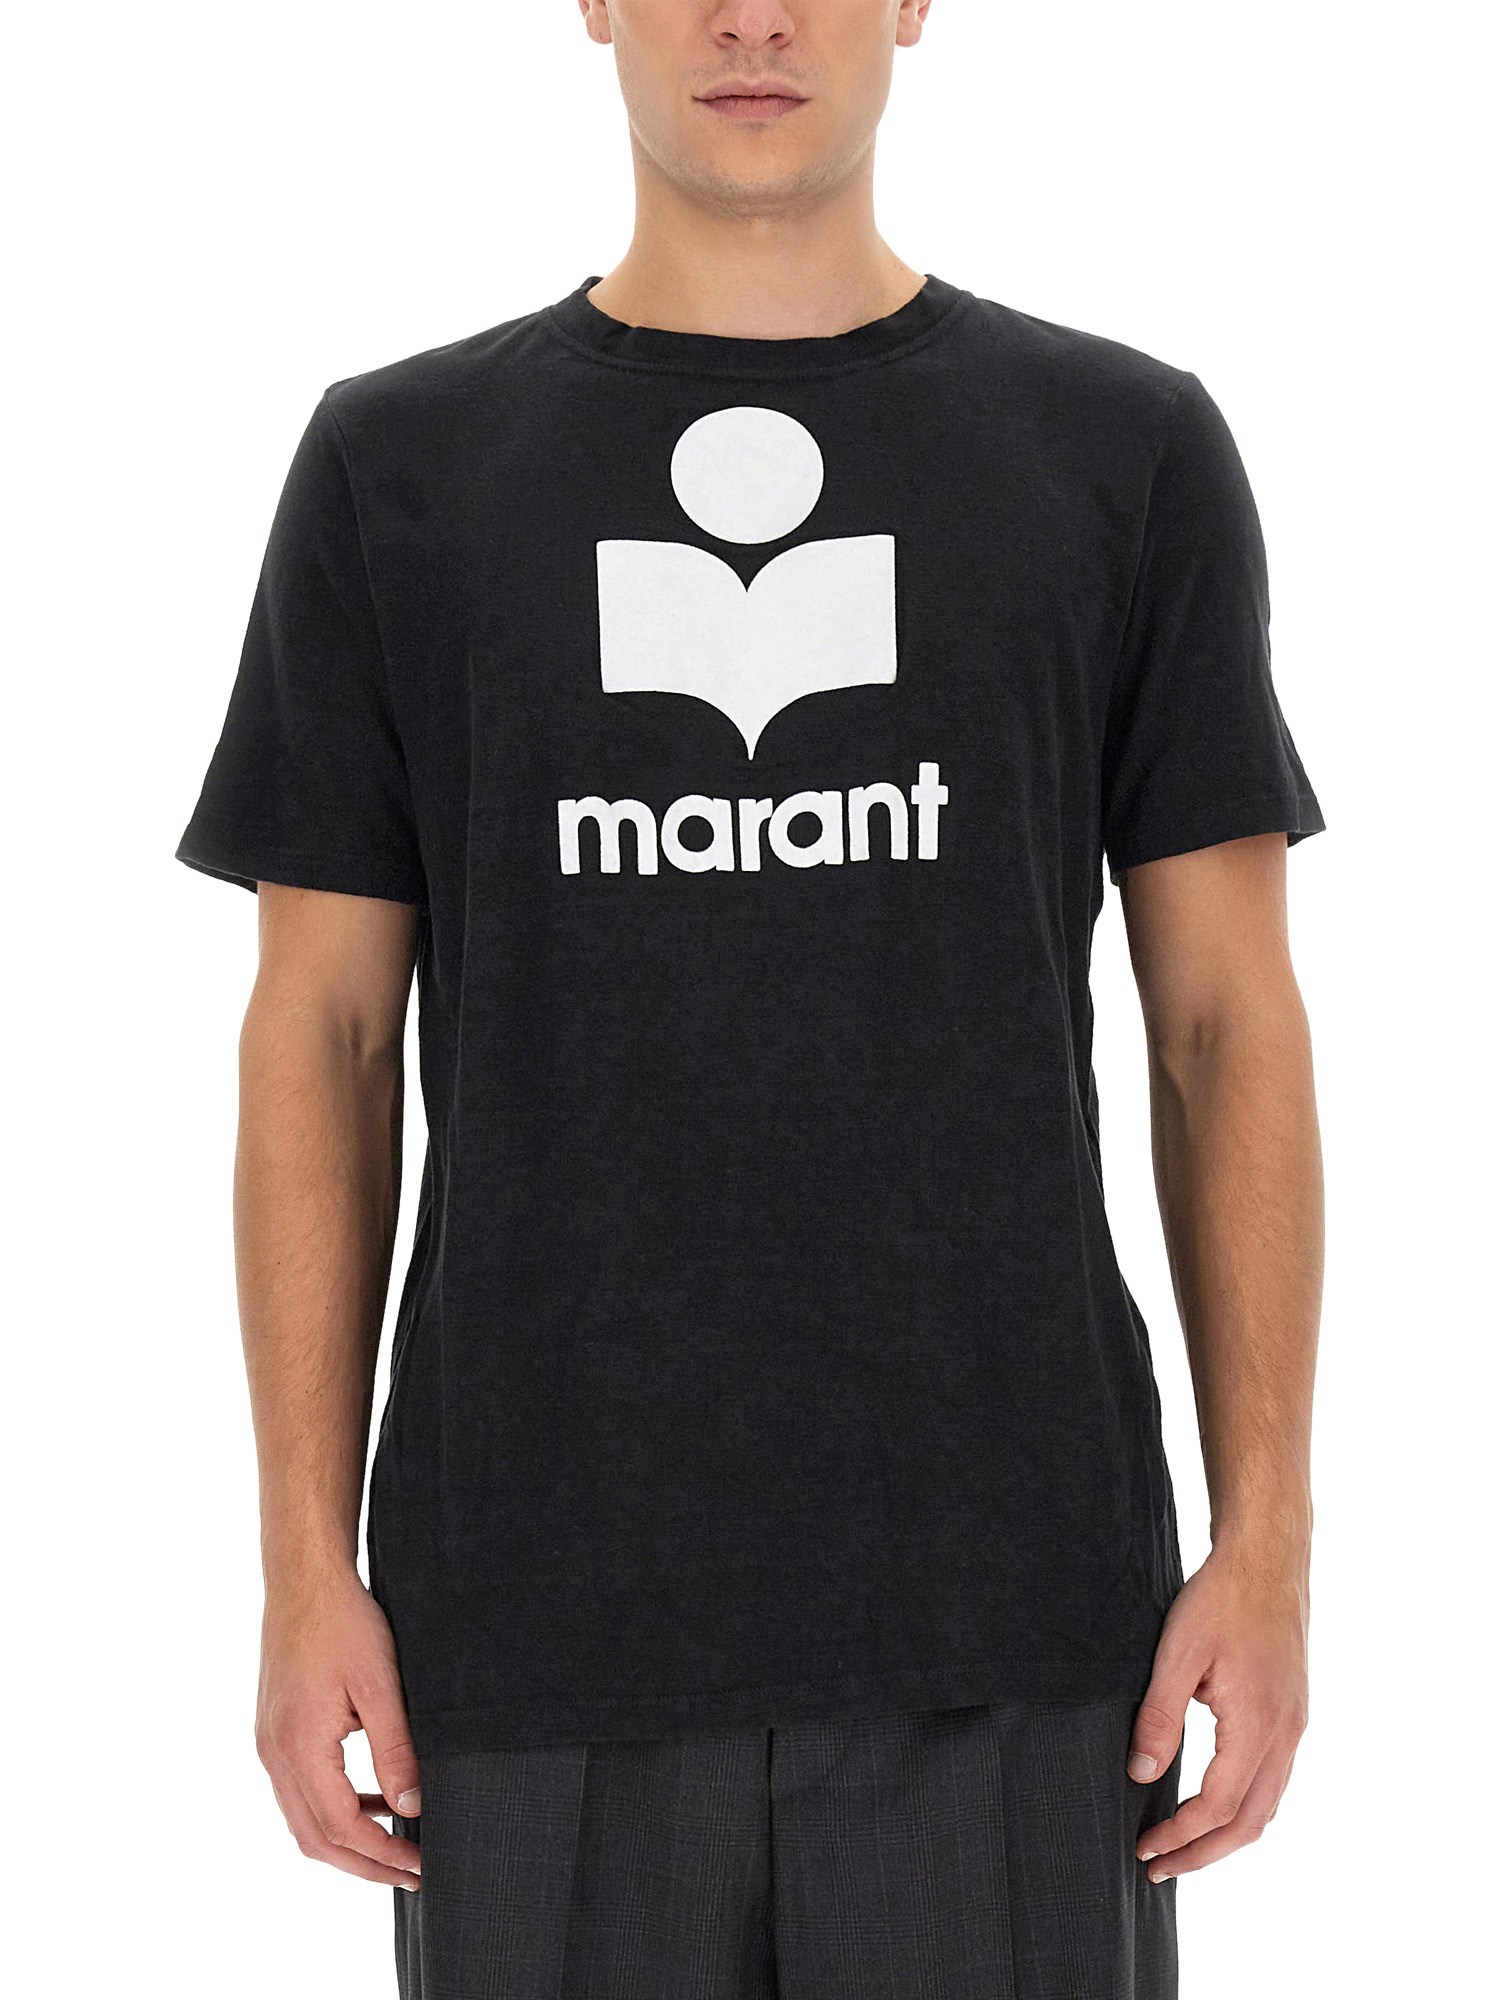 marant karman t-shirt